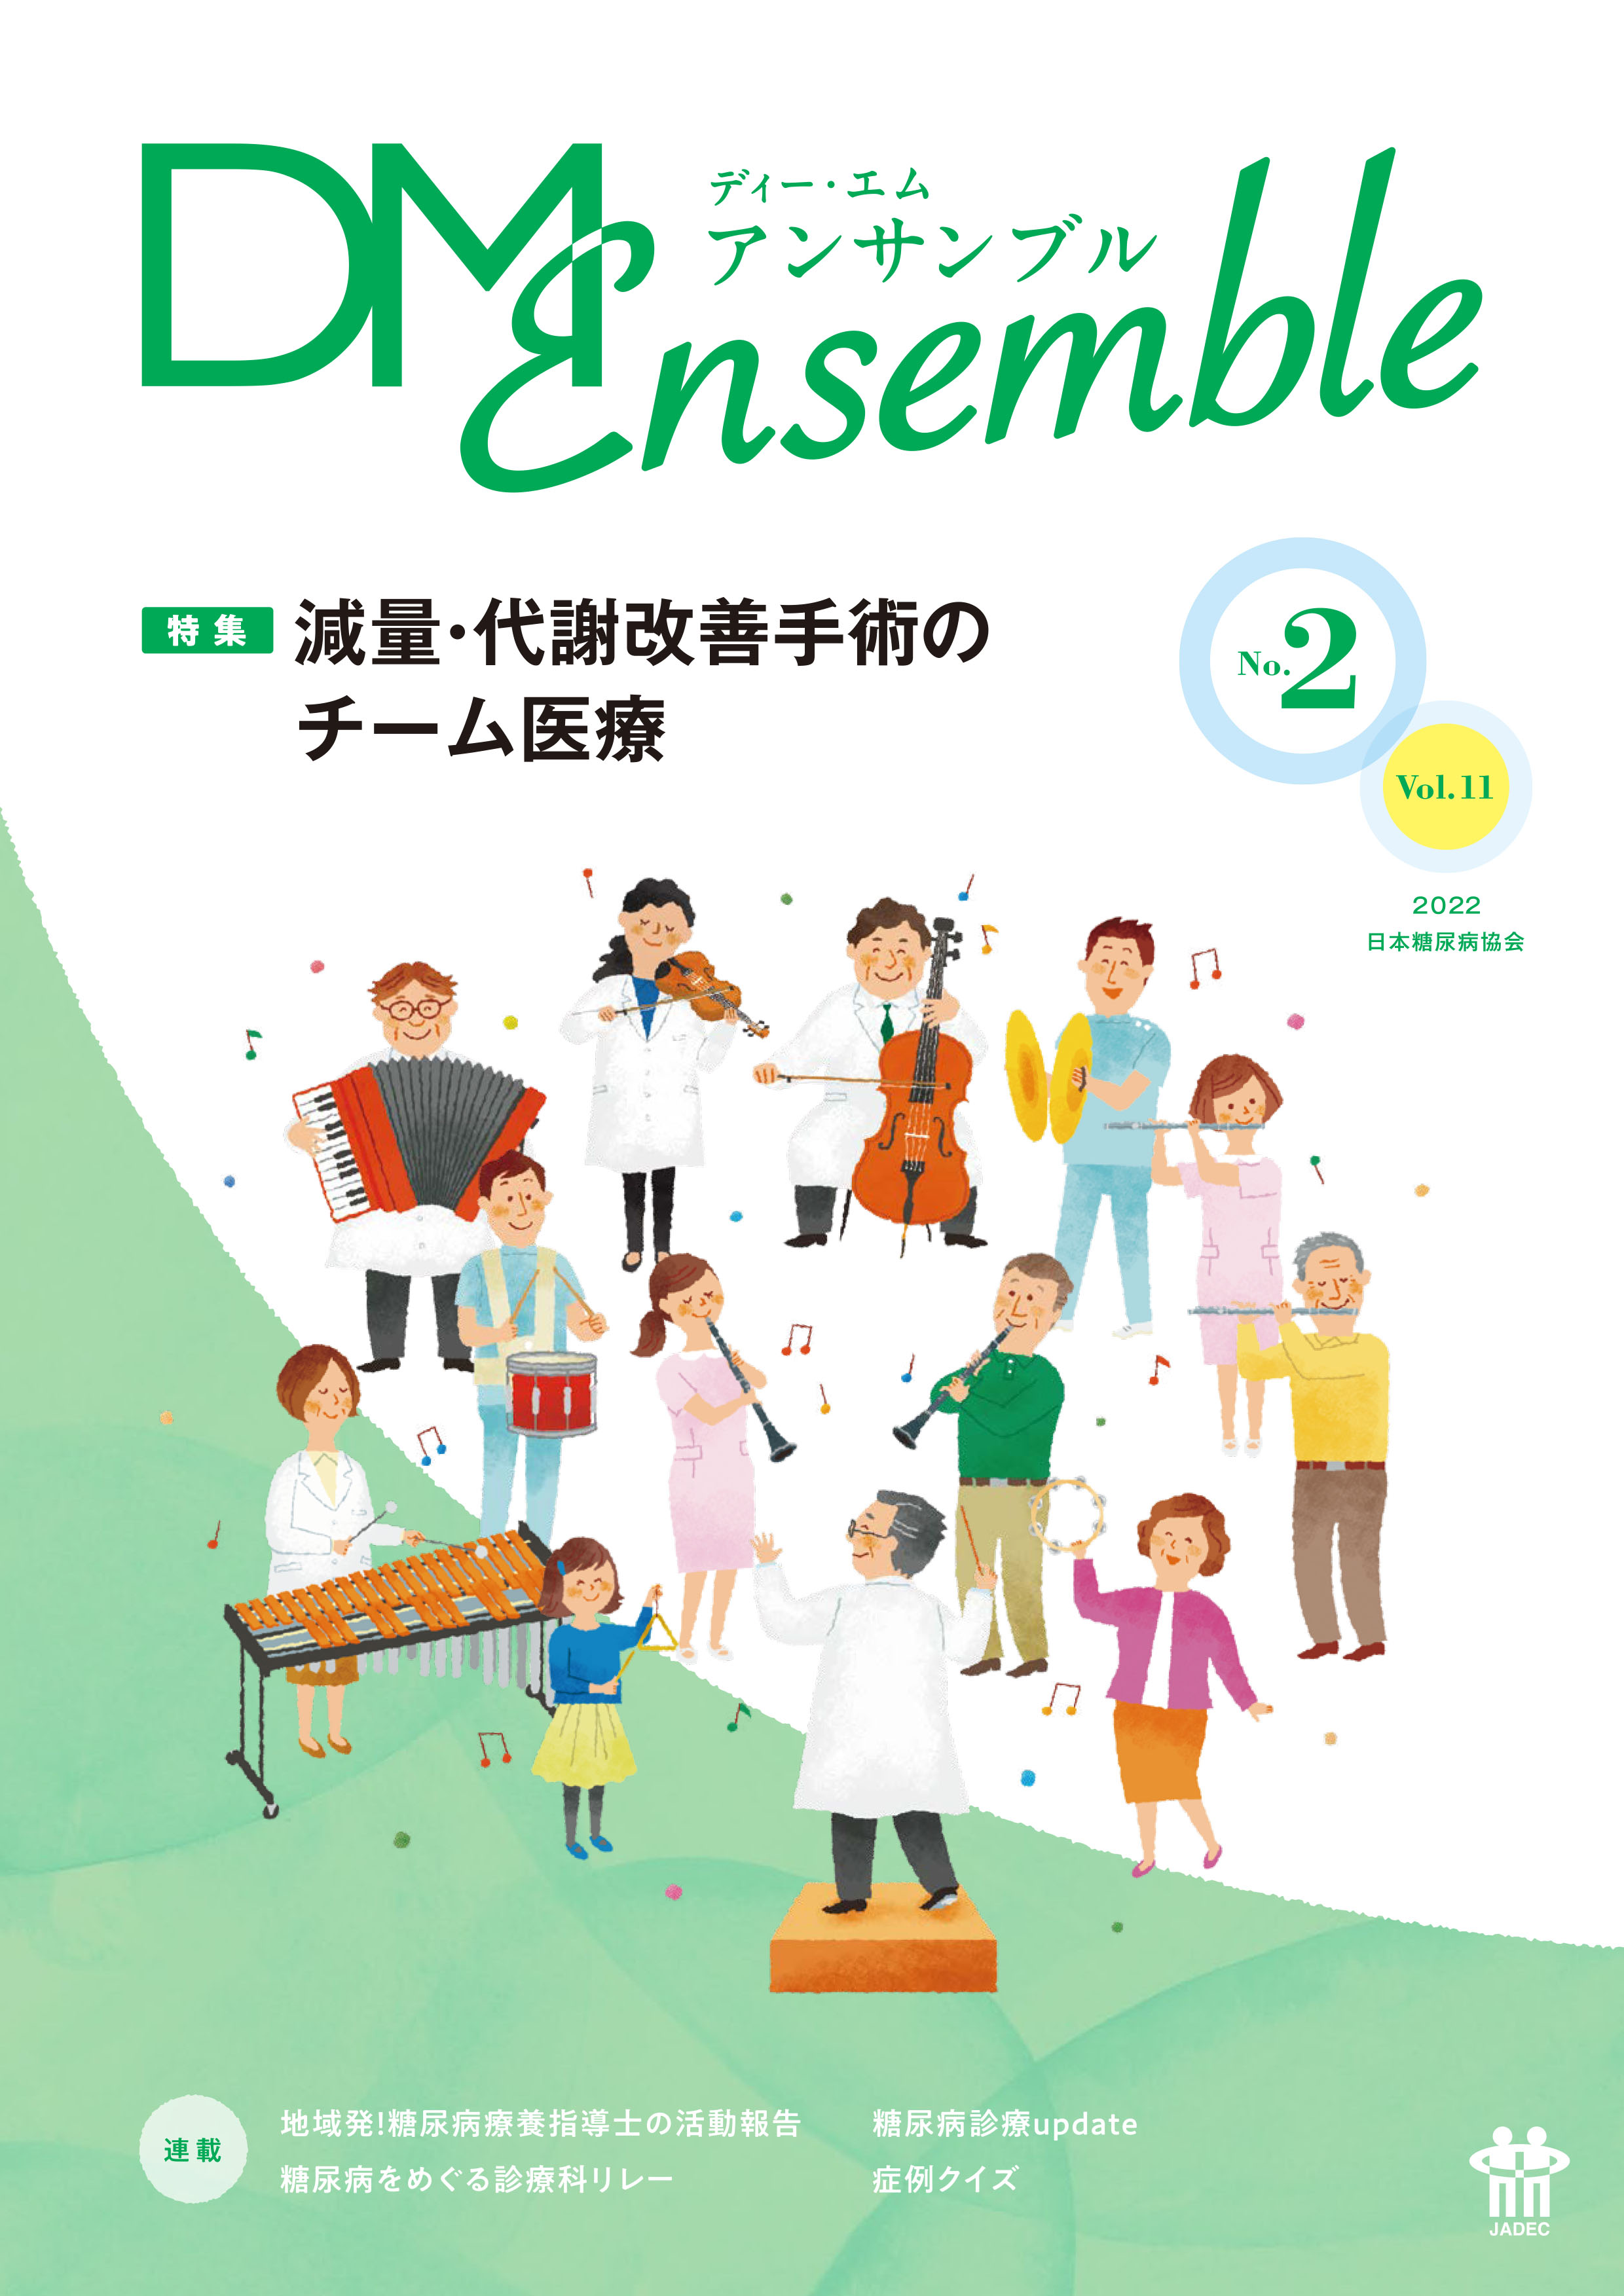 DM Ensemble Vol.11 No.2